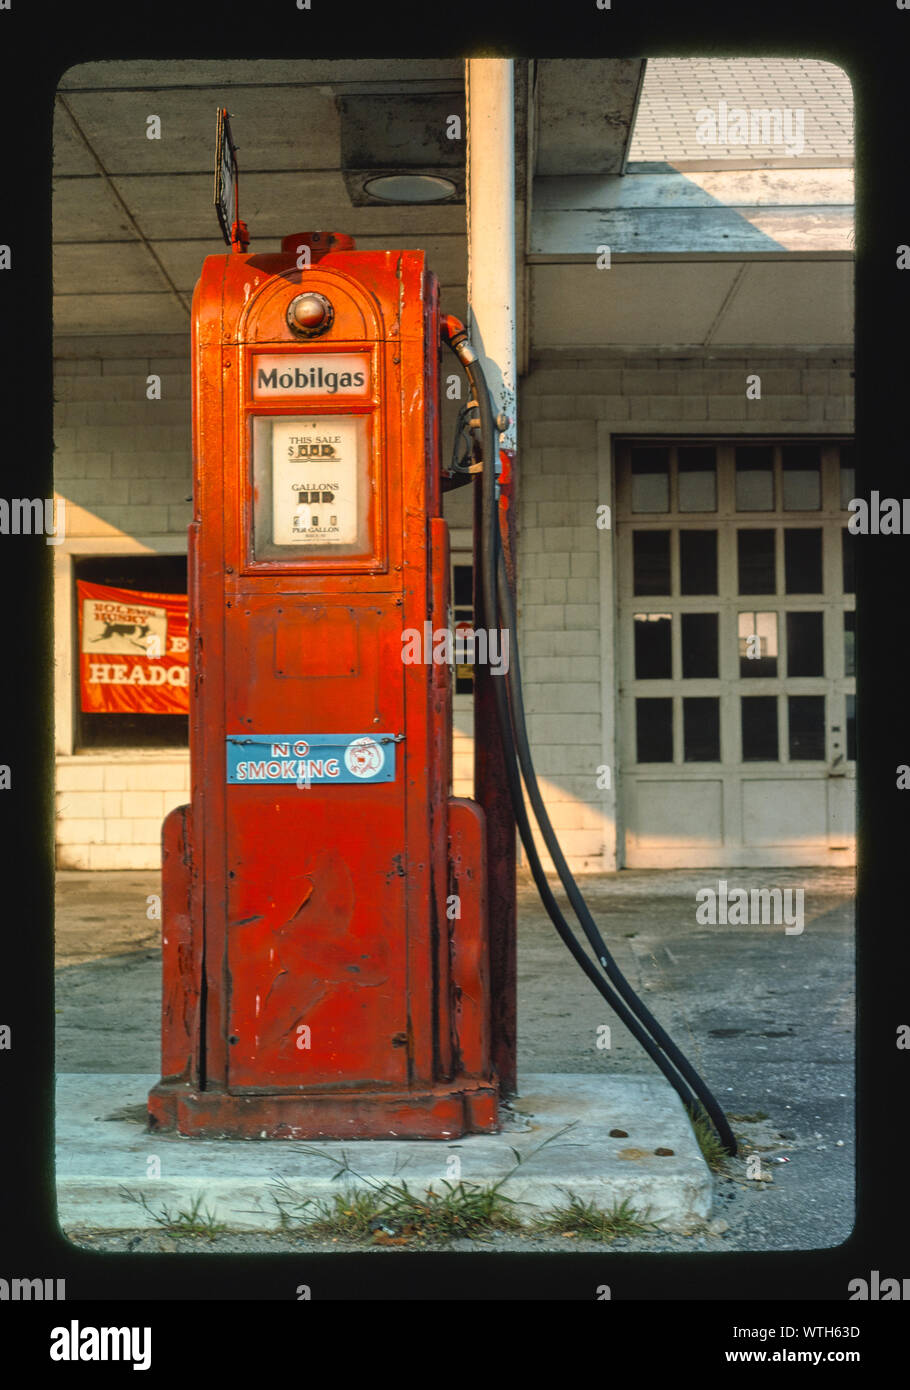 Mobil gas pump, Wilton, Connecticut Stock Photo